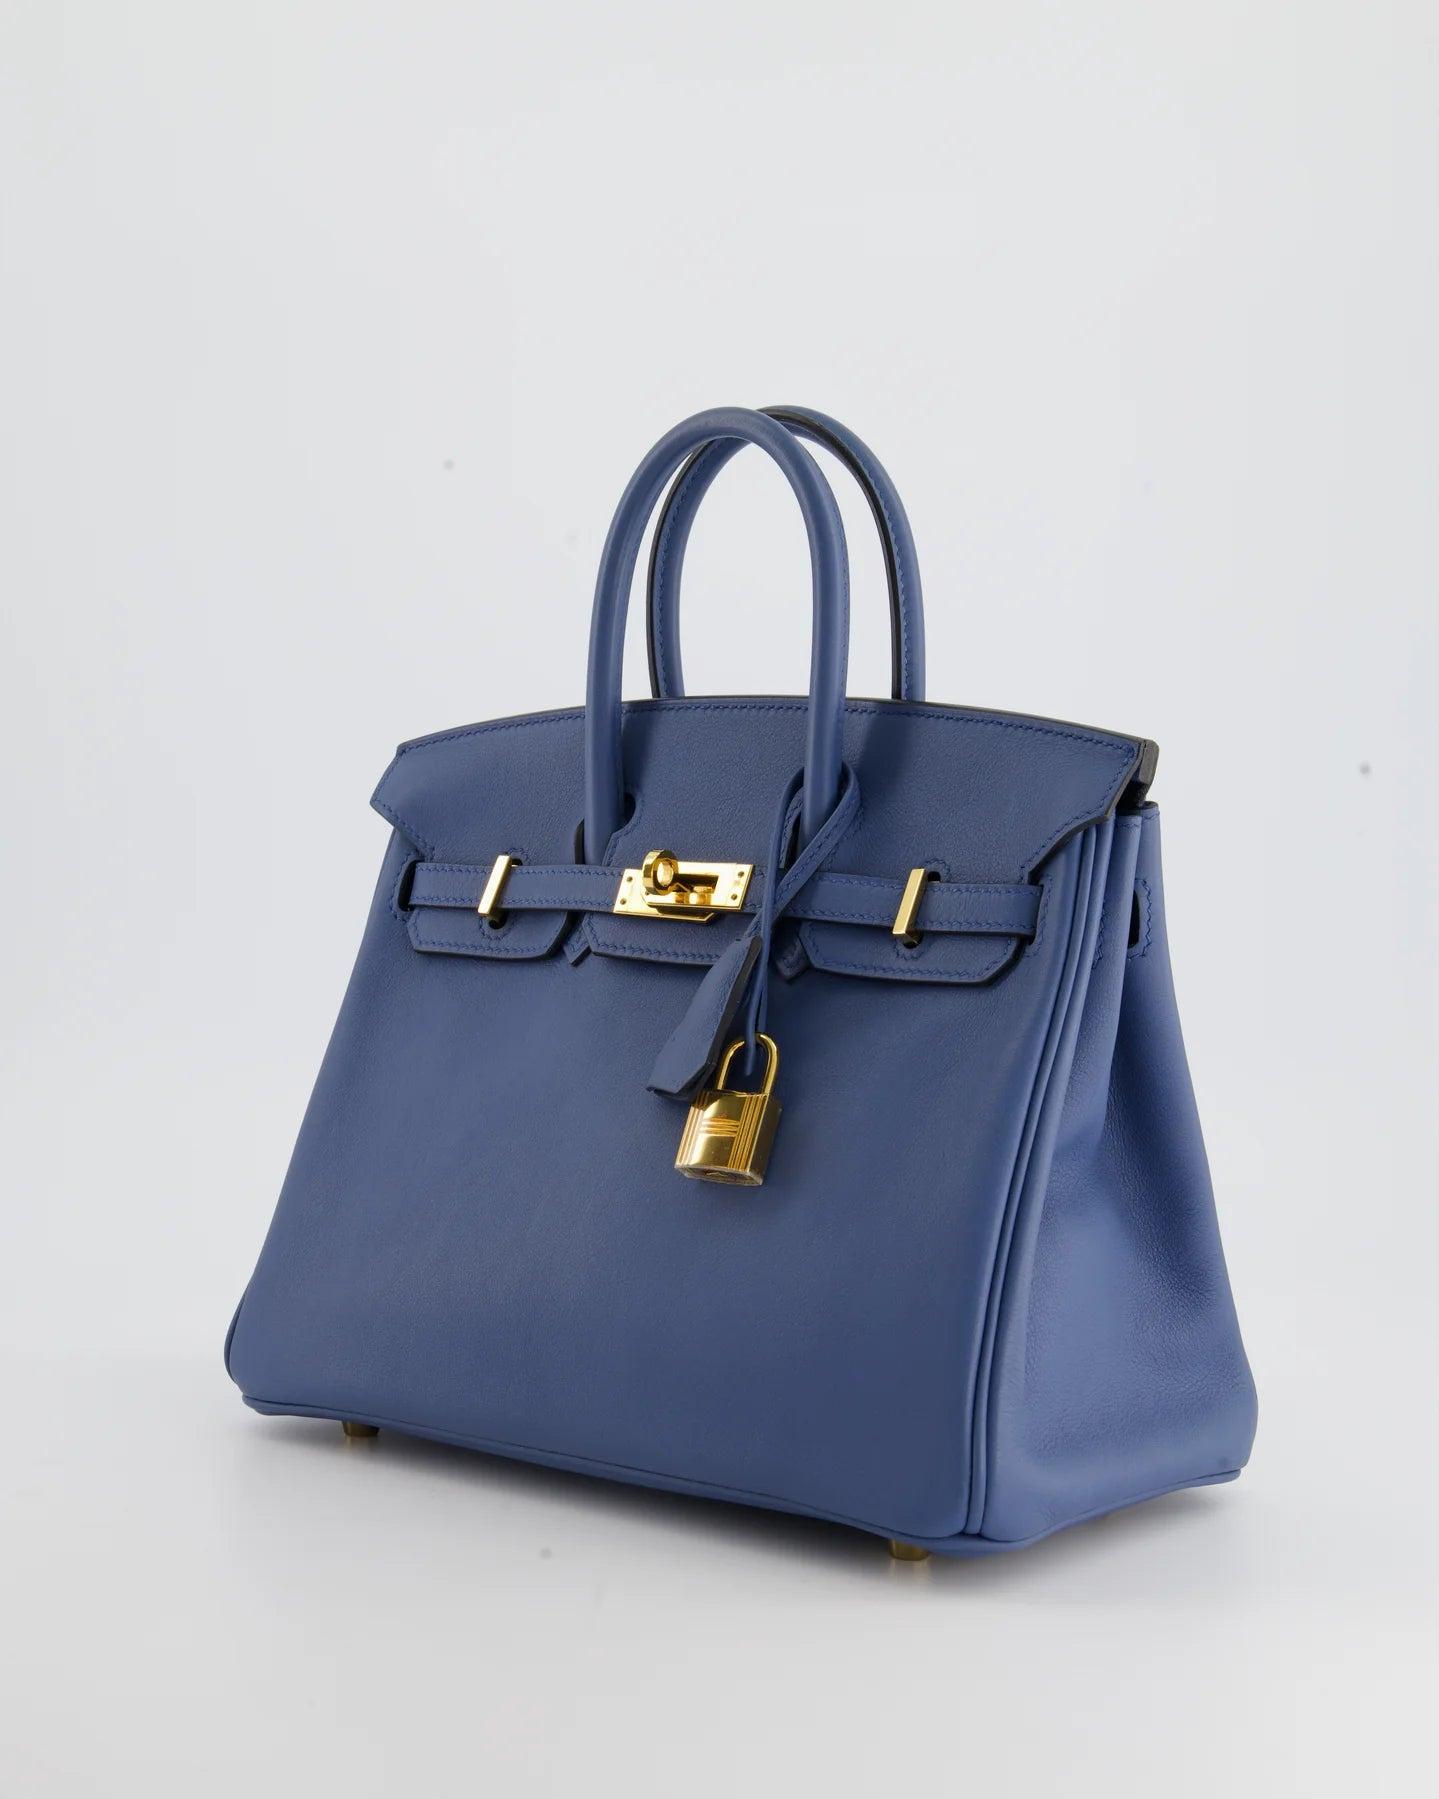 Hermès Birkin 25cm In Blue Brighton Swift Leather With Gold Hardware